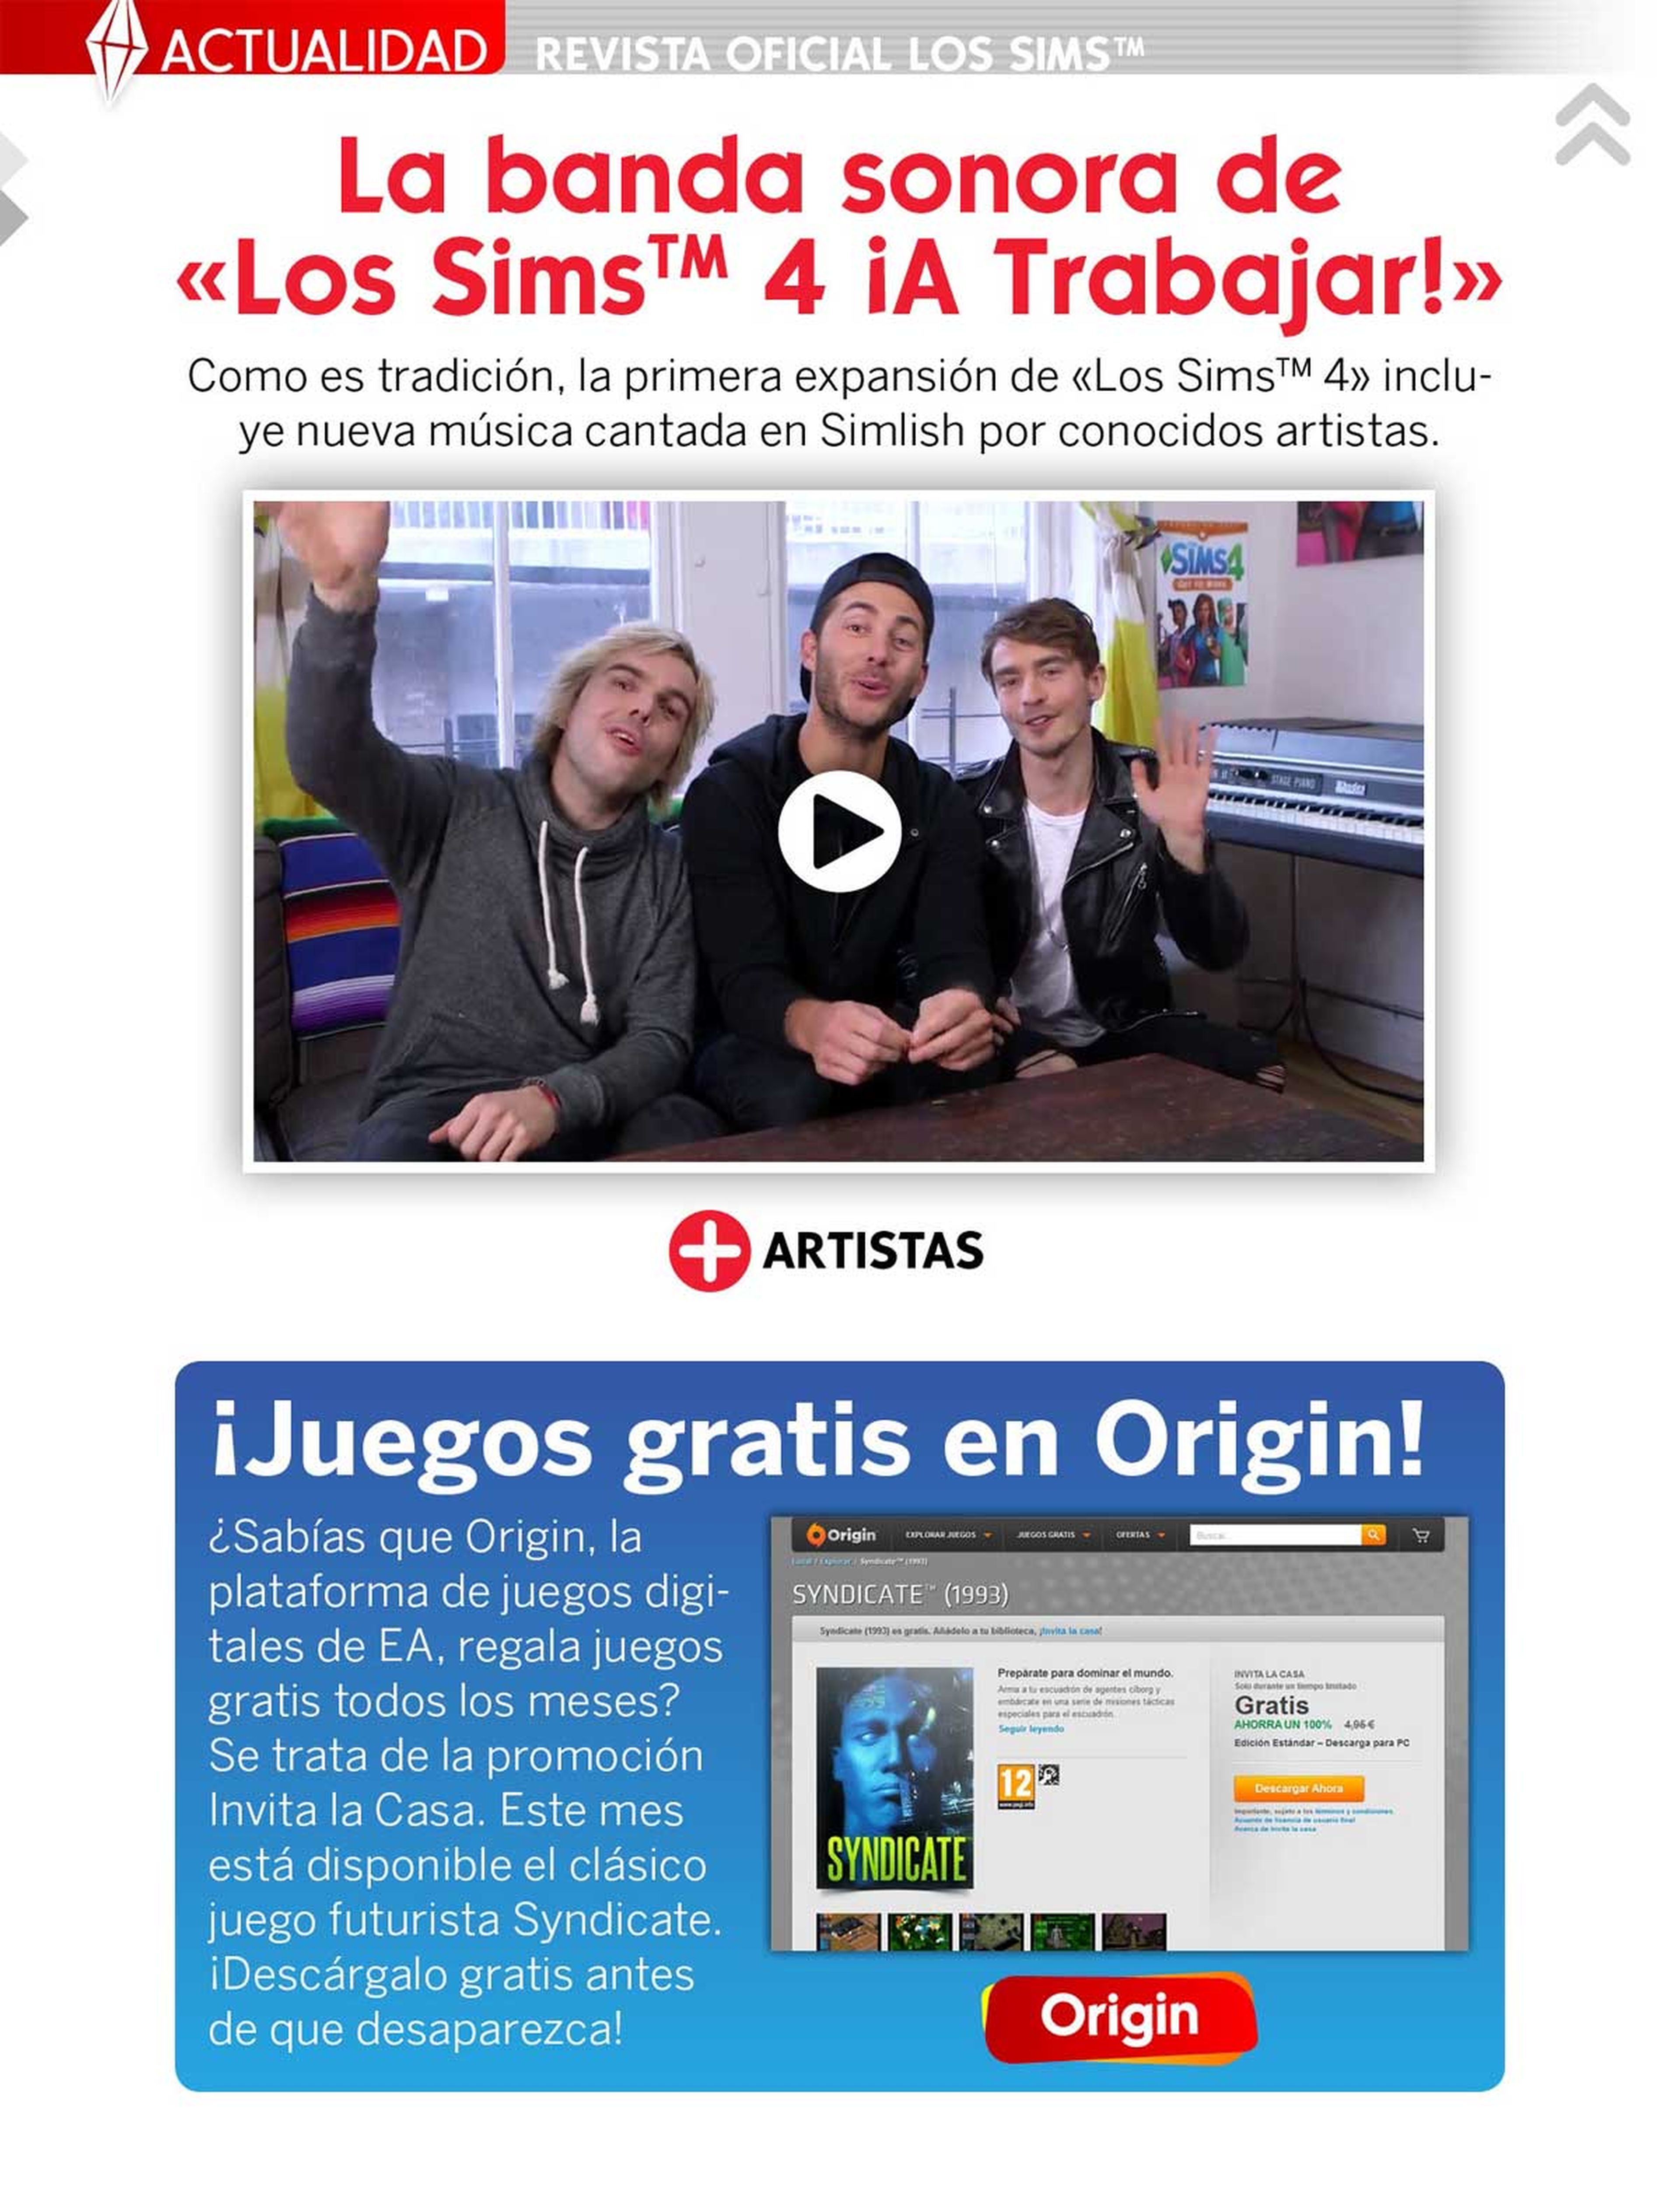 ¡Ya puedes descargar gratis el número 13 de La Revista Oficial de Los Sims!